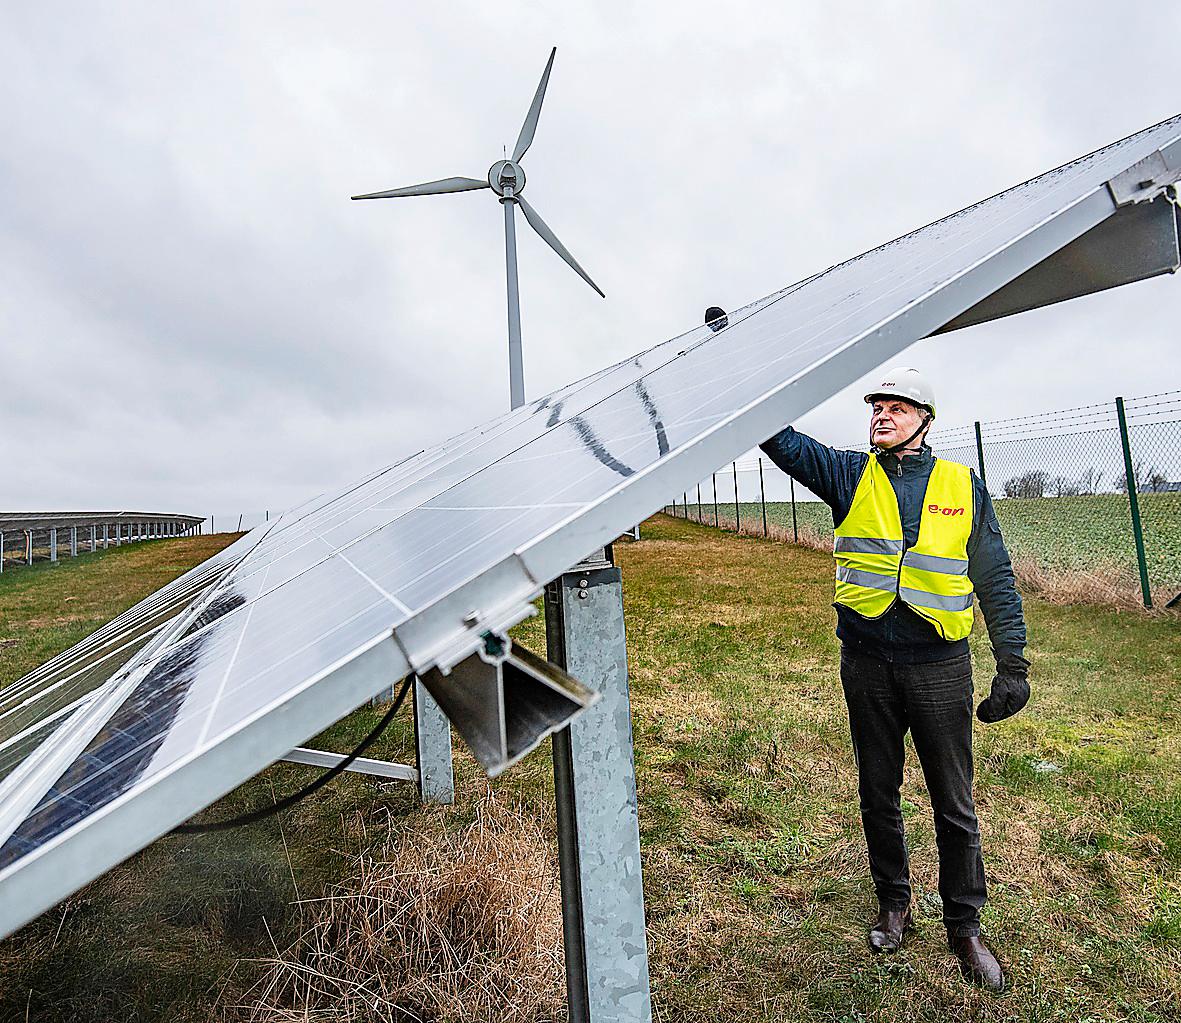 Eons experimentanläggning i Skåne. Sjunkande priser för el från vindkraft och solceller revolutionerar energisektorn och tänder hoppet att kunna fasa ut fossila bränslen.